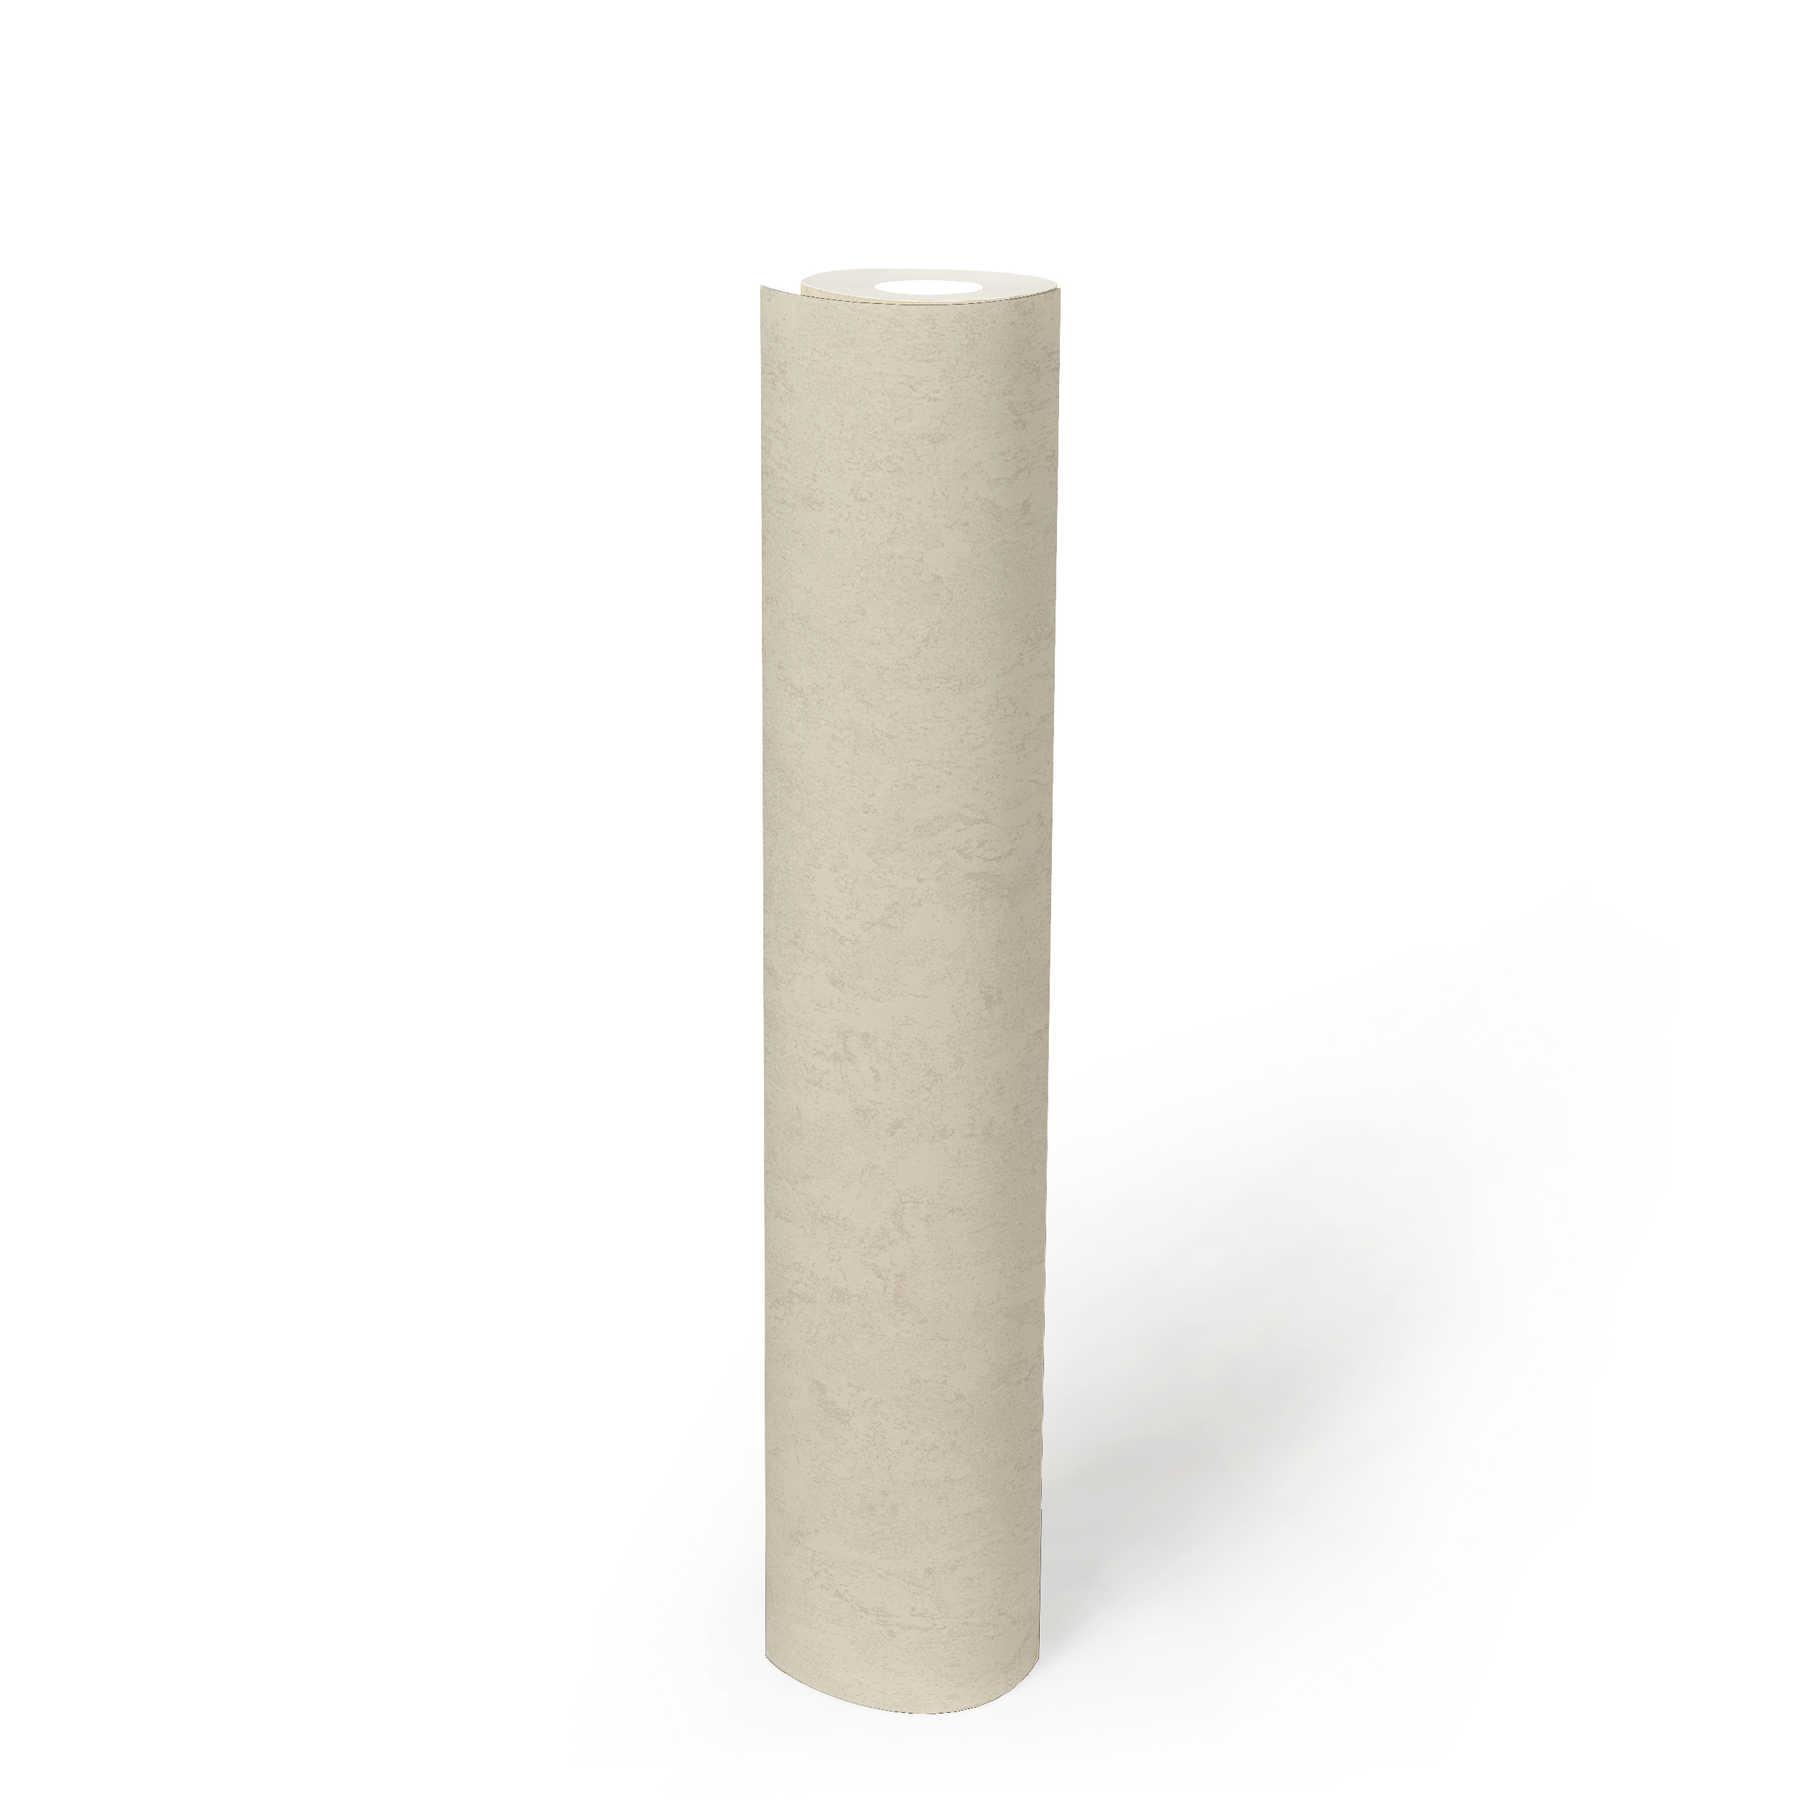             Gipsvezelbehang crème met glanseffect & structuurdesign
        